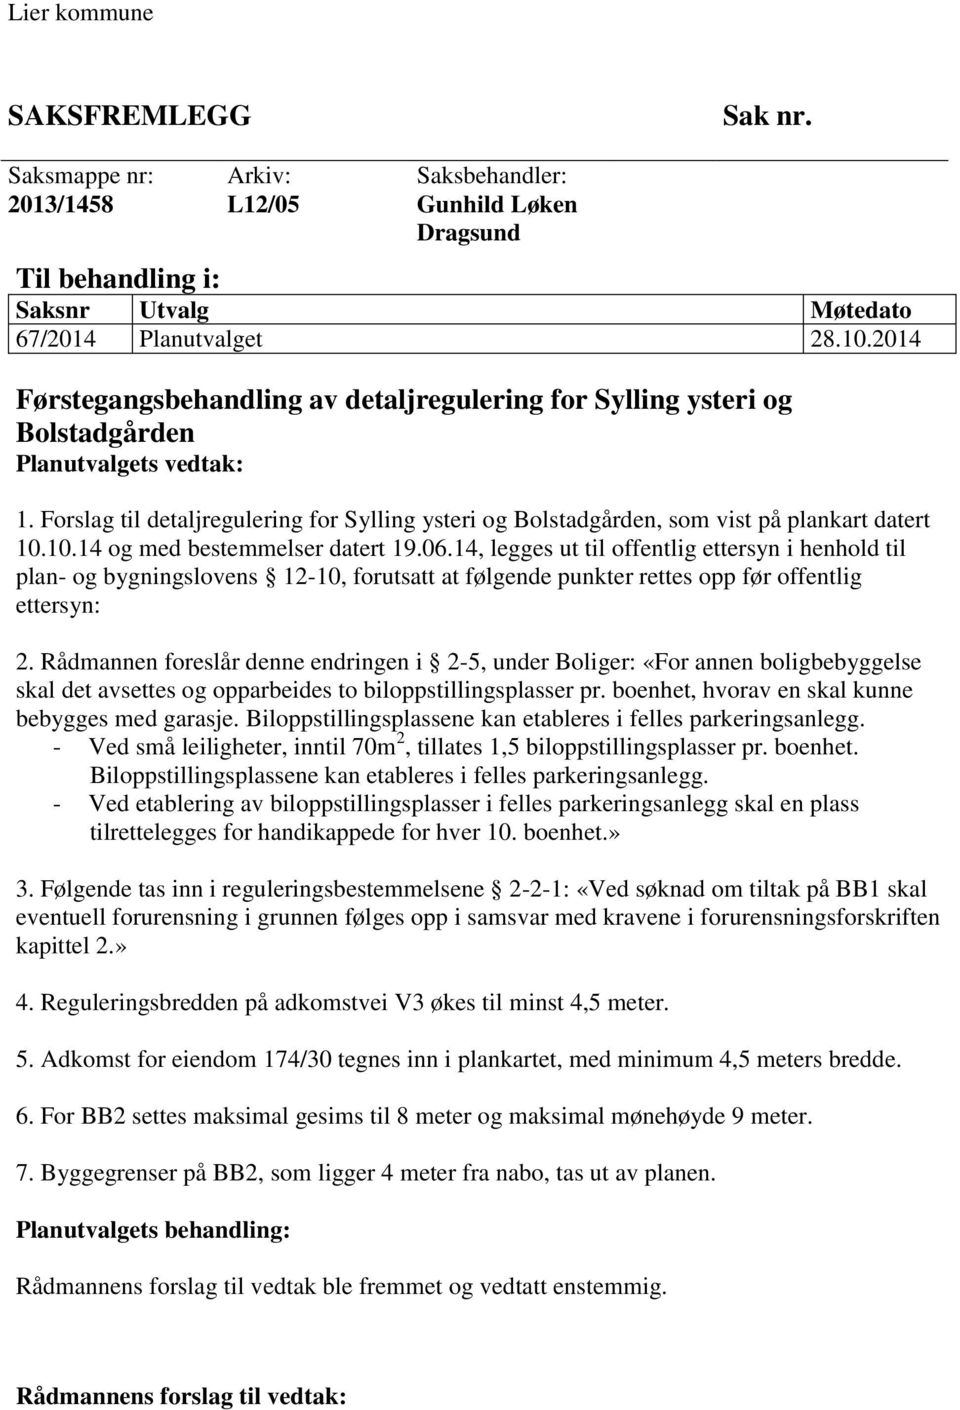 Forslag til detaljregulering for Sylling ysteri og Bolstadgården, som vist på plankart datert 10.10.14 og med bestemmelser datert 19.06.